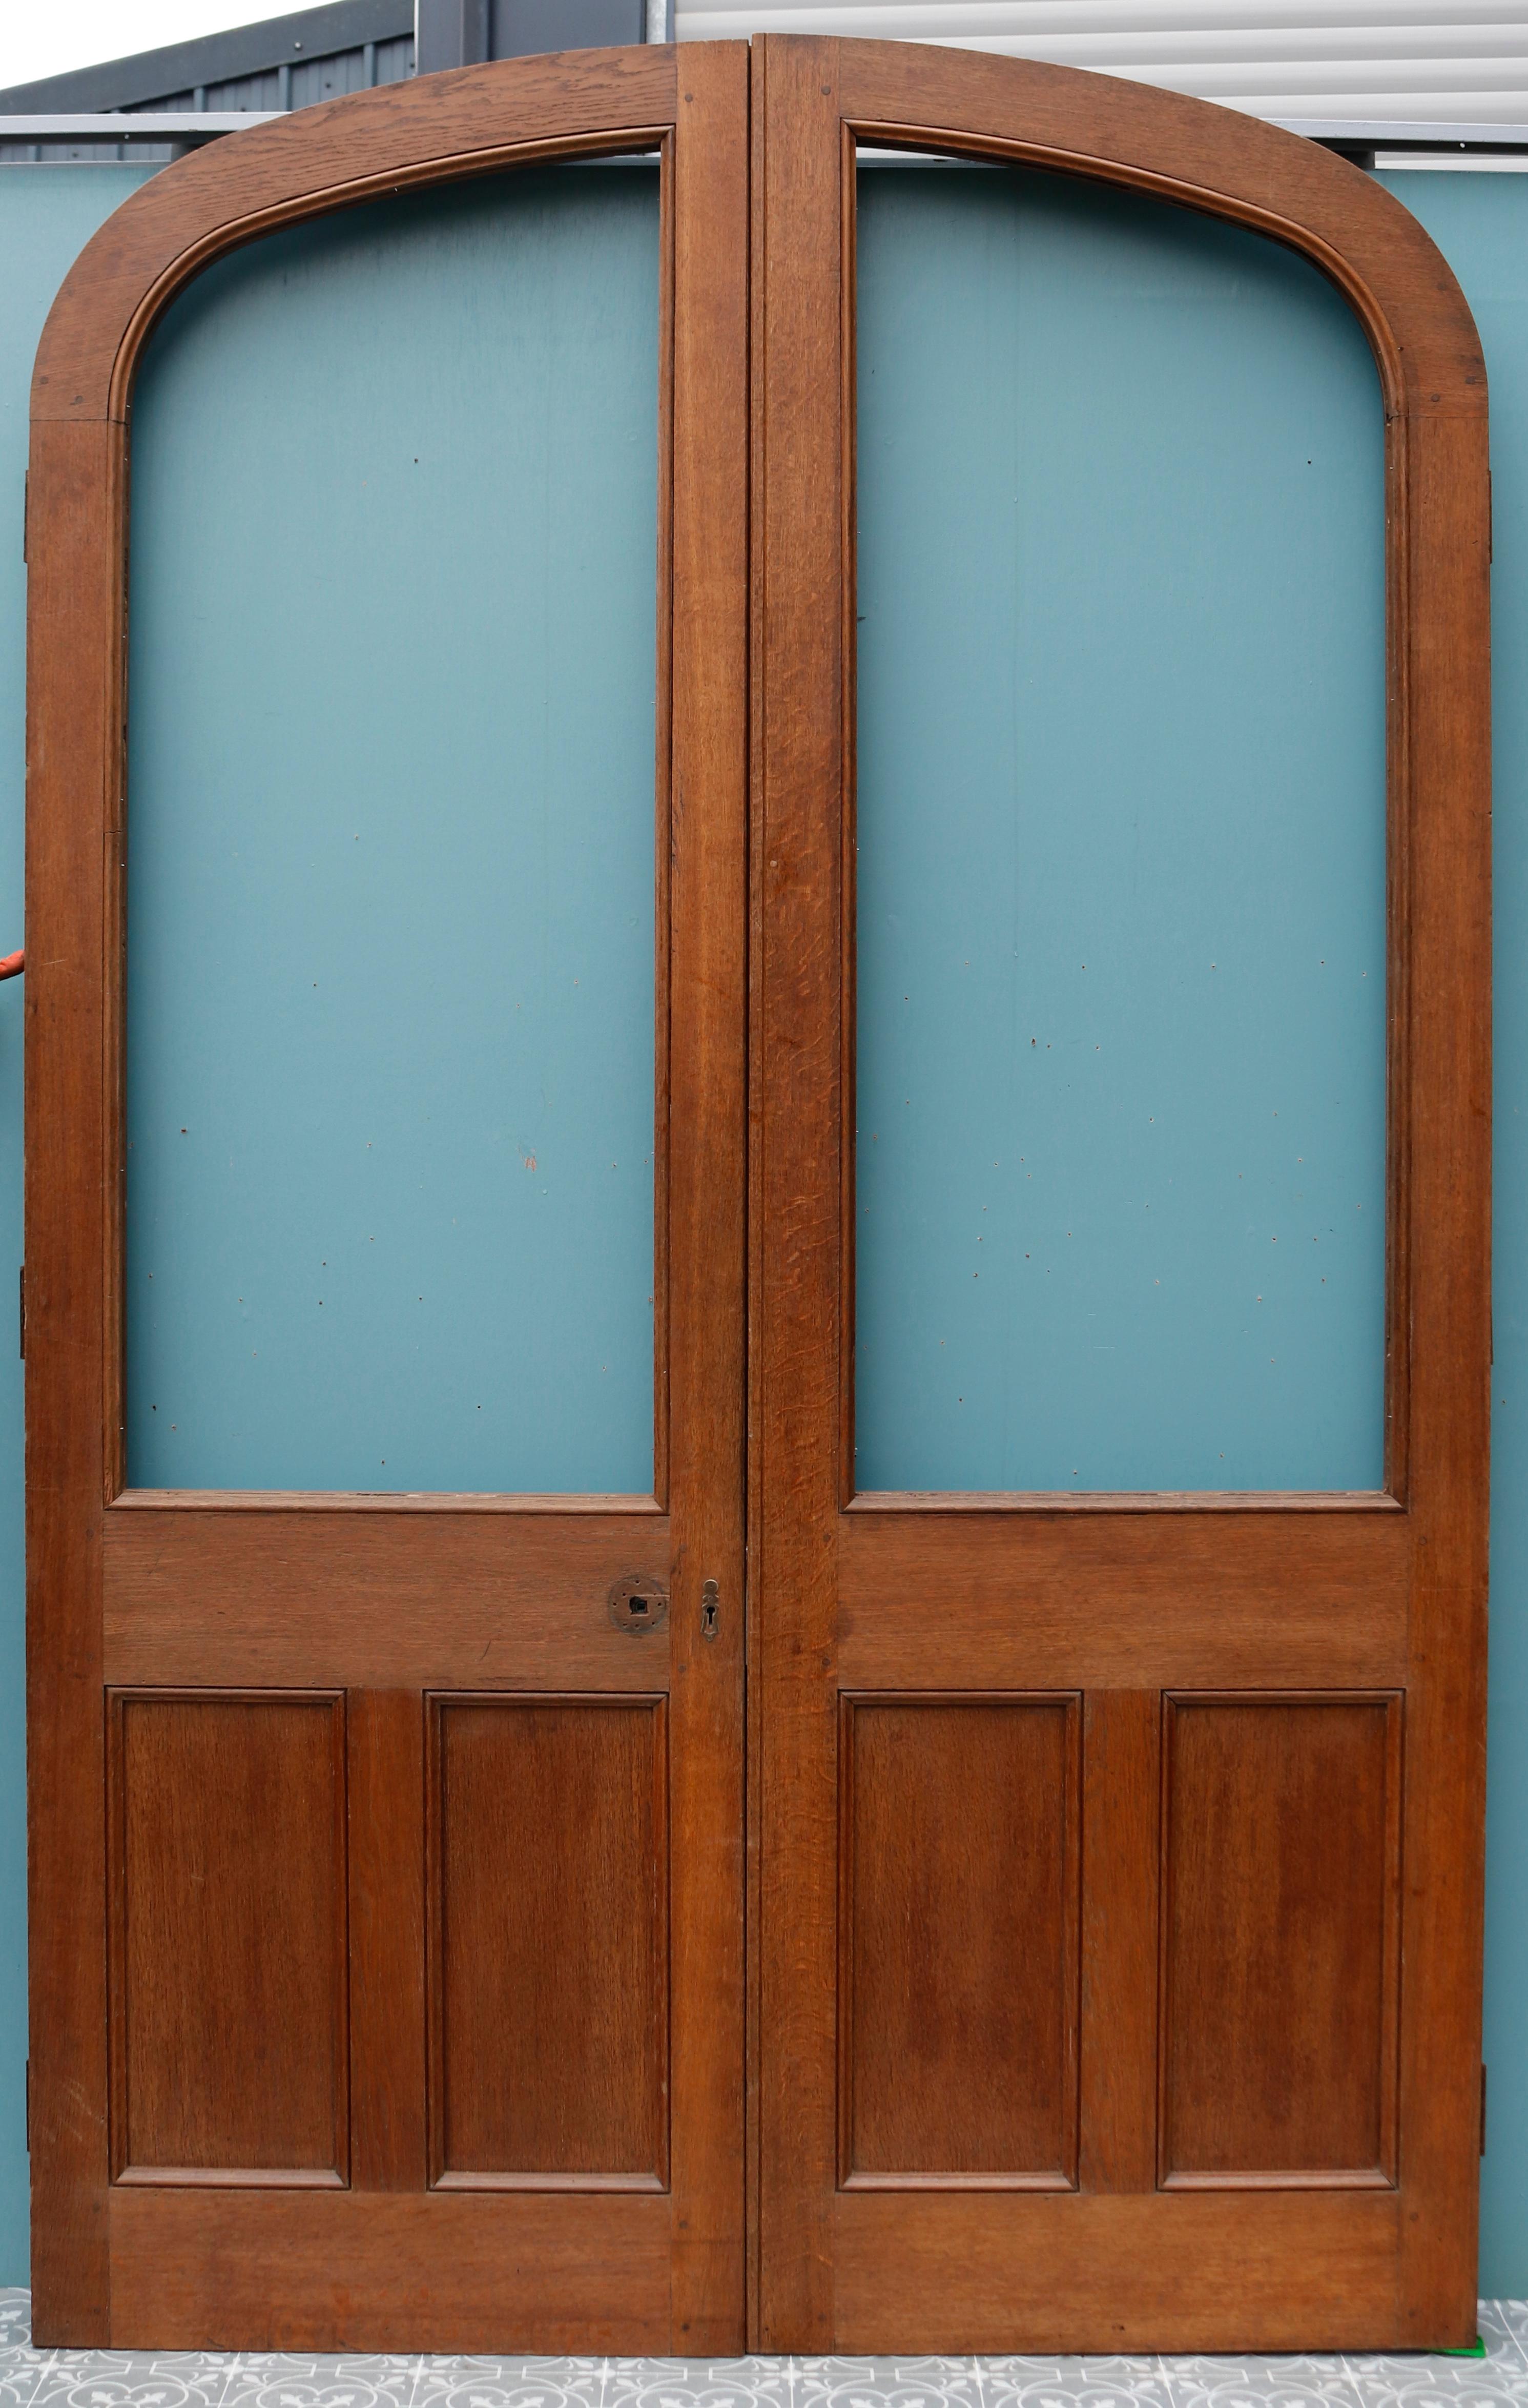 Ein massives Paar Türen aus aufgearbeiteter Eiche, bereit für die Verglasung.
 
Sie sind sowohl für den Außen- als auch für den Inneneinsatz geeignet.